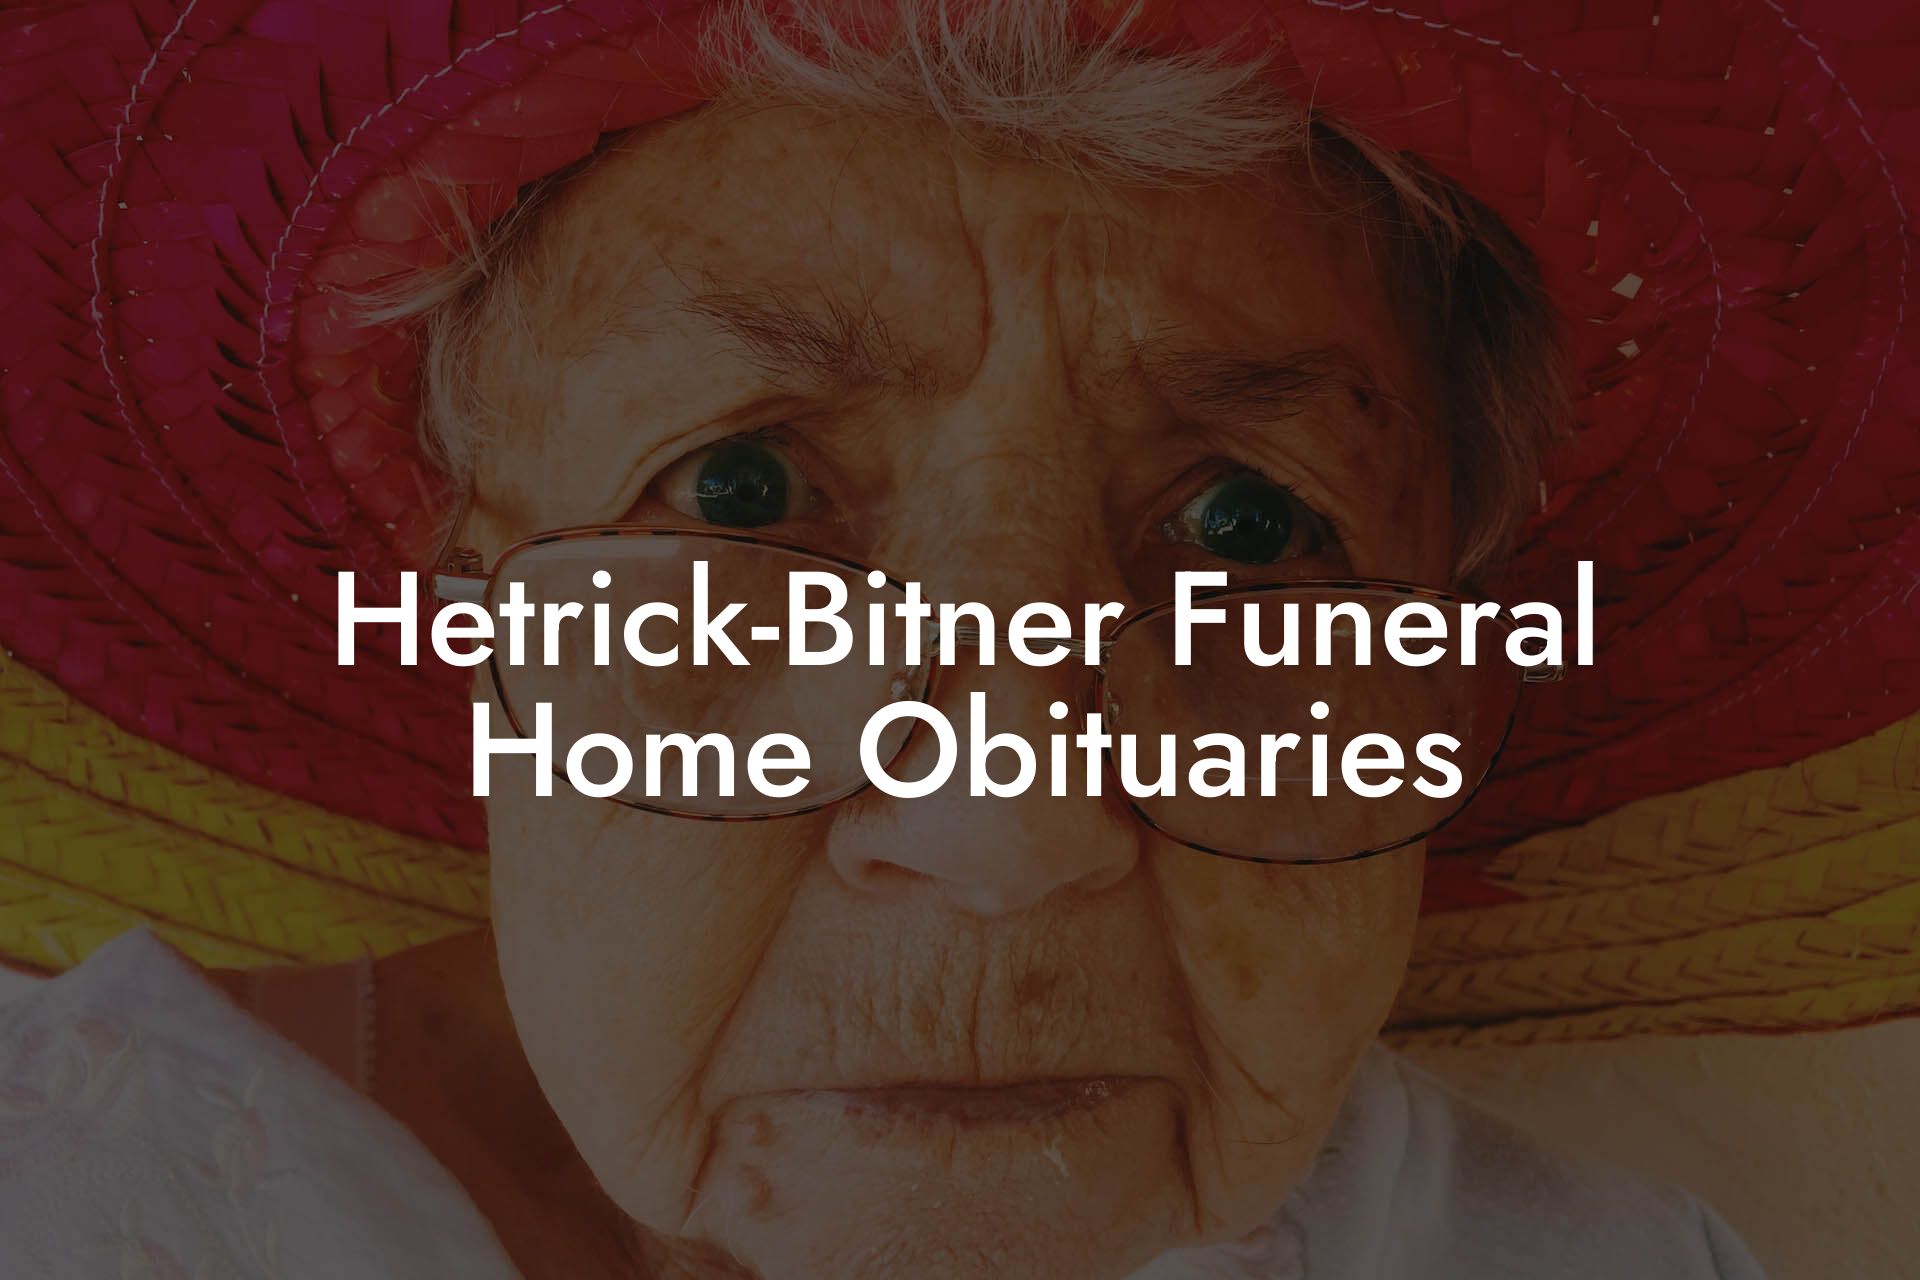 Hetrick-Bitner Funeral Home Obituaries